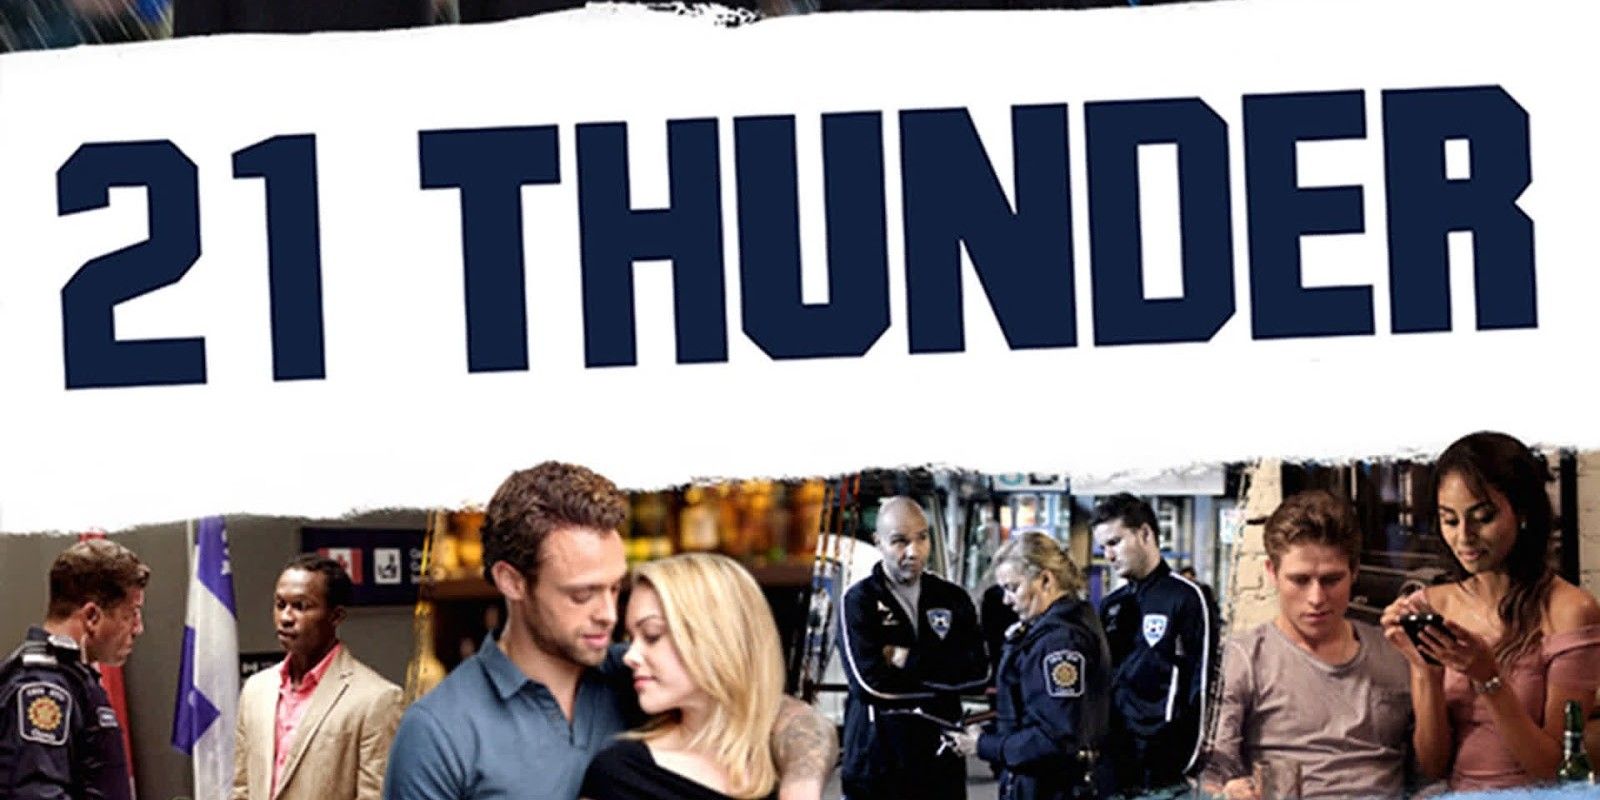 Promo image of 21 Thunder